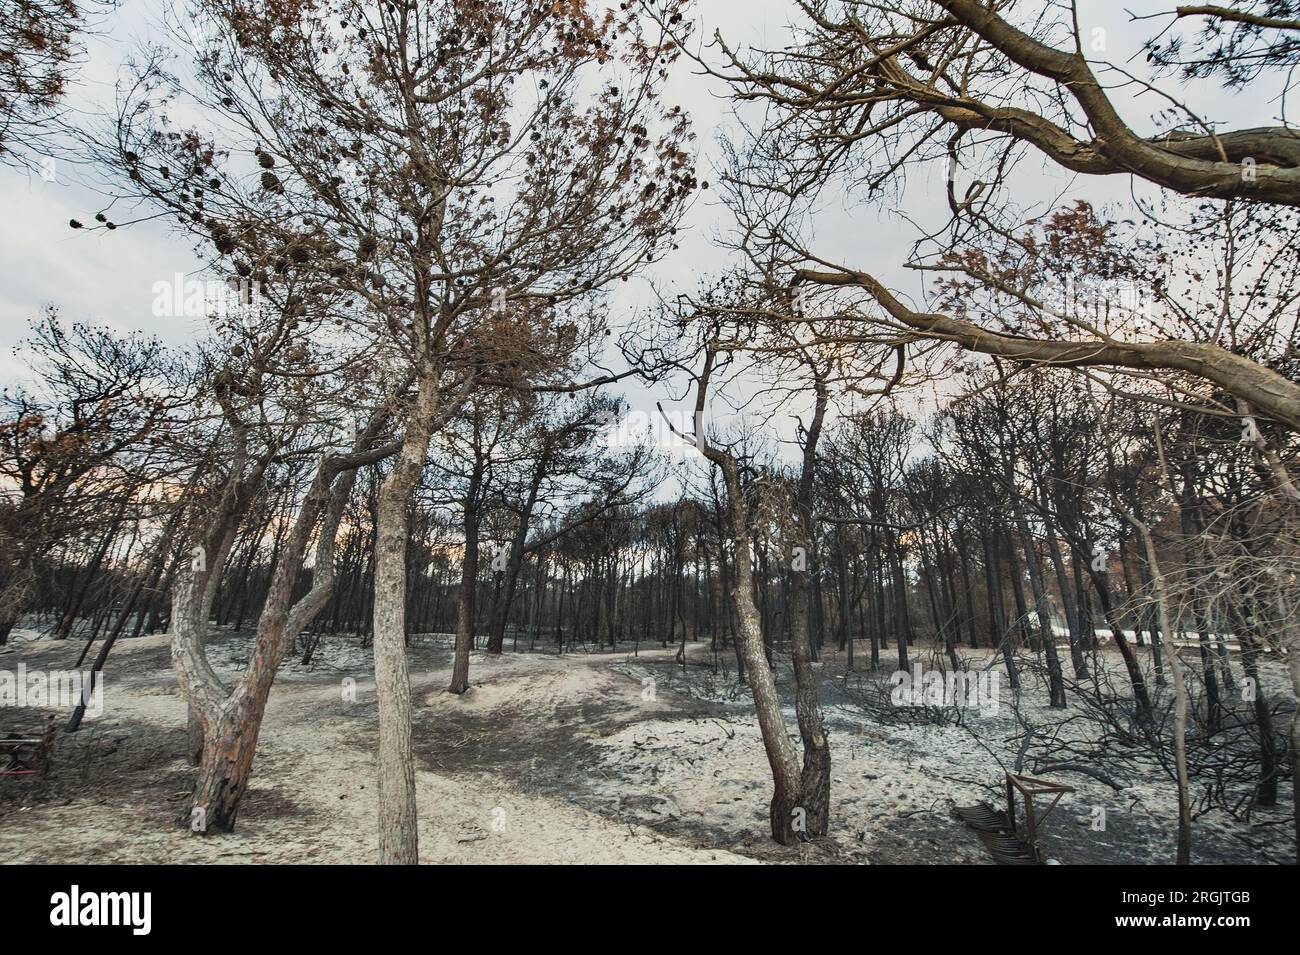 La pineta italiana nella riserva naturale di Metaponto presenta un ambiente danneggiato da incendi o falò. Pineta, pineta bruciata da fiamme o calore Foto Stock